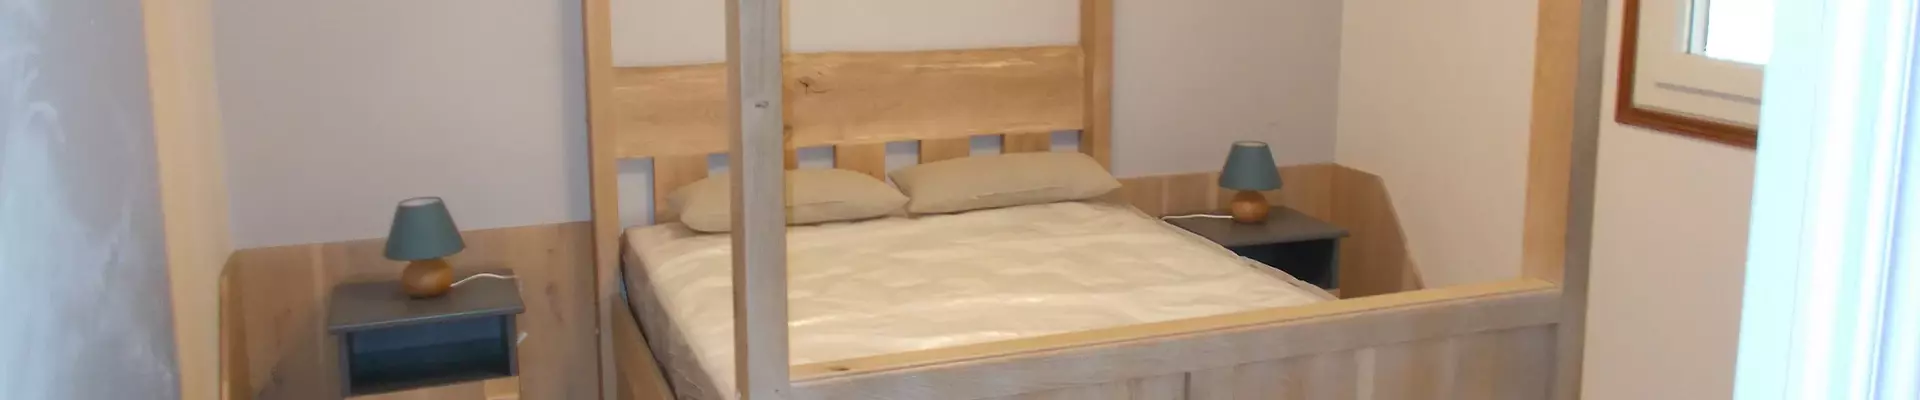 Création d'un lit à baldaquin en bois sur mesure | Concept Création Alès